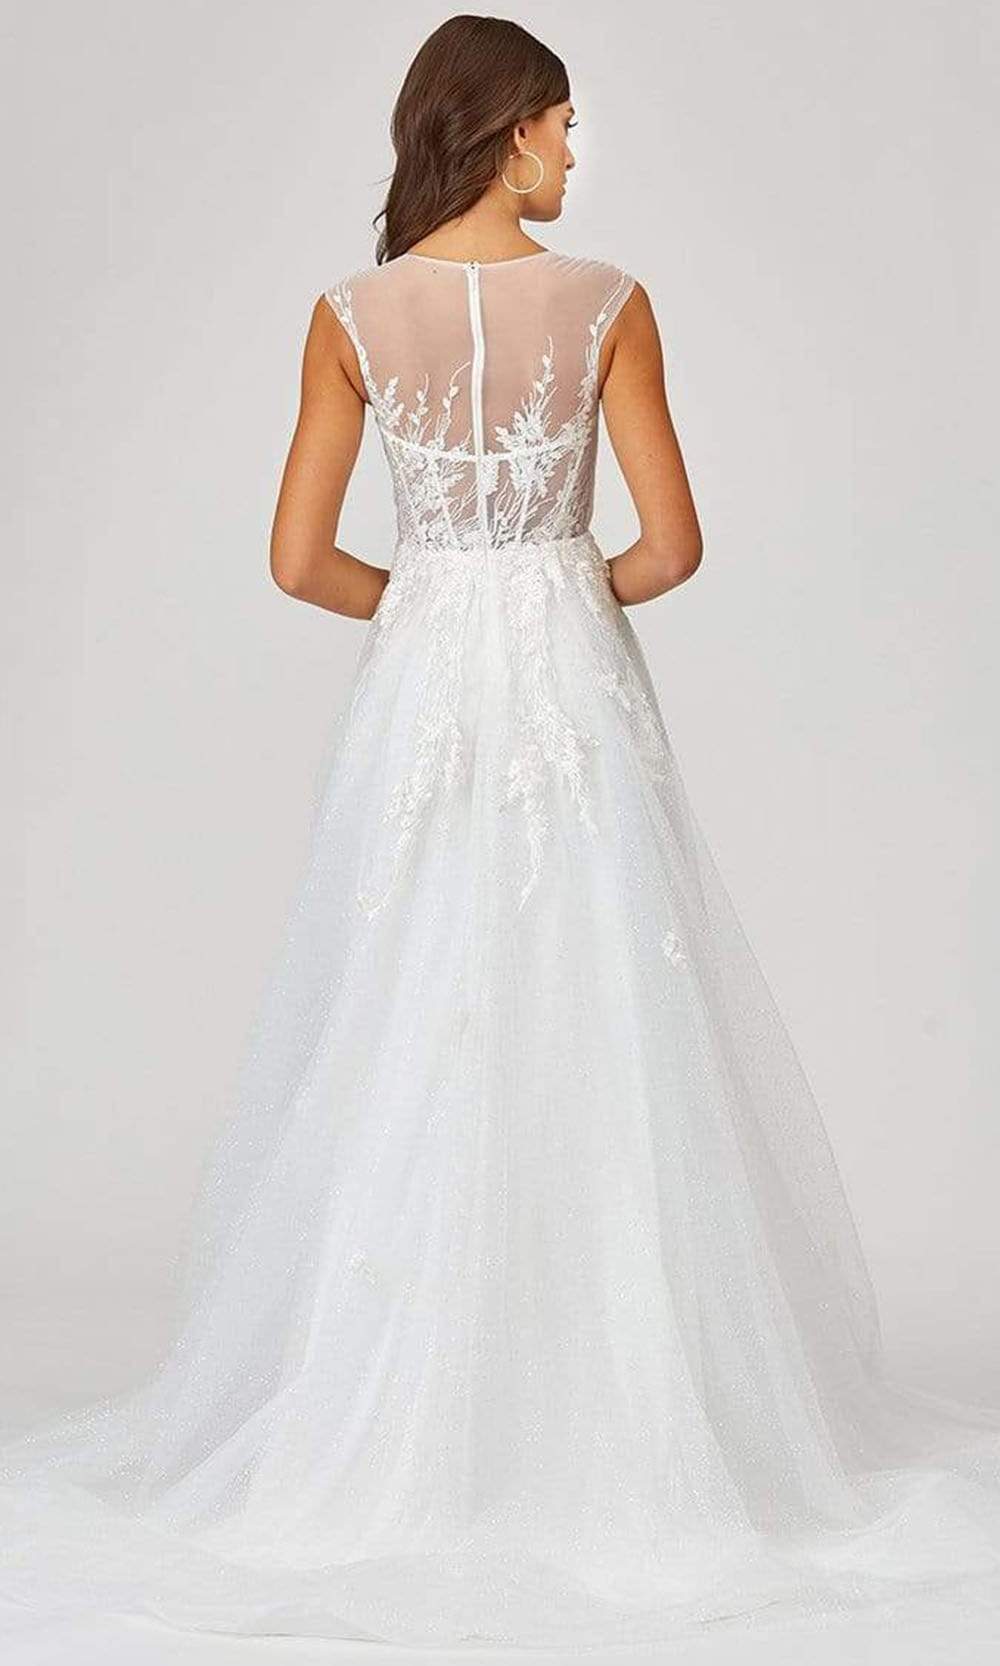 Lara Dresses - 51044 Embellished A-Line Dress Wedding Dresses